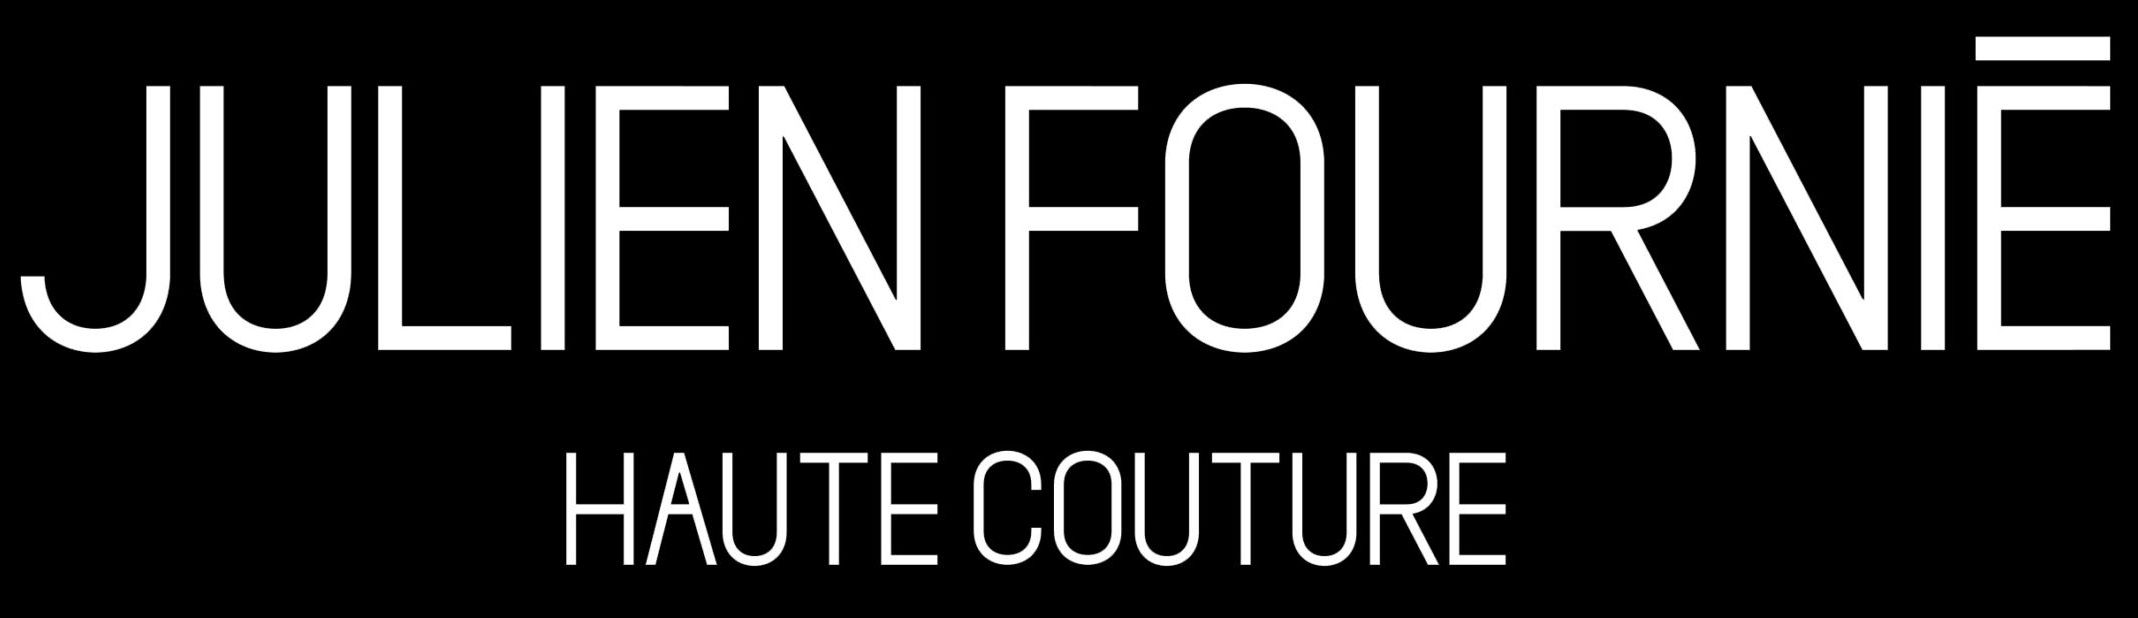 haute couture Julien Fournié